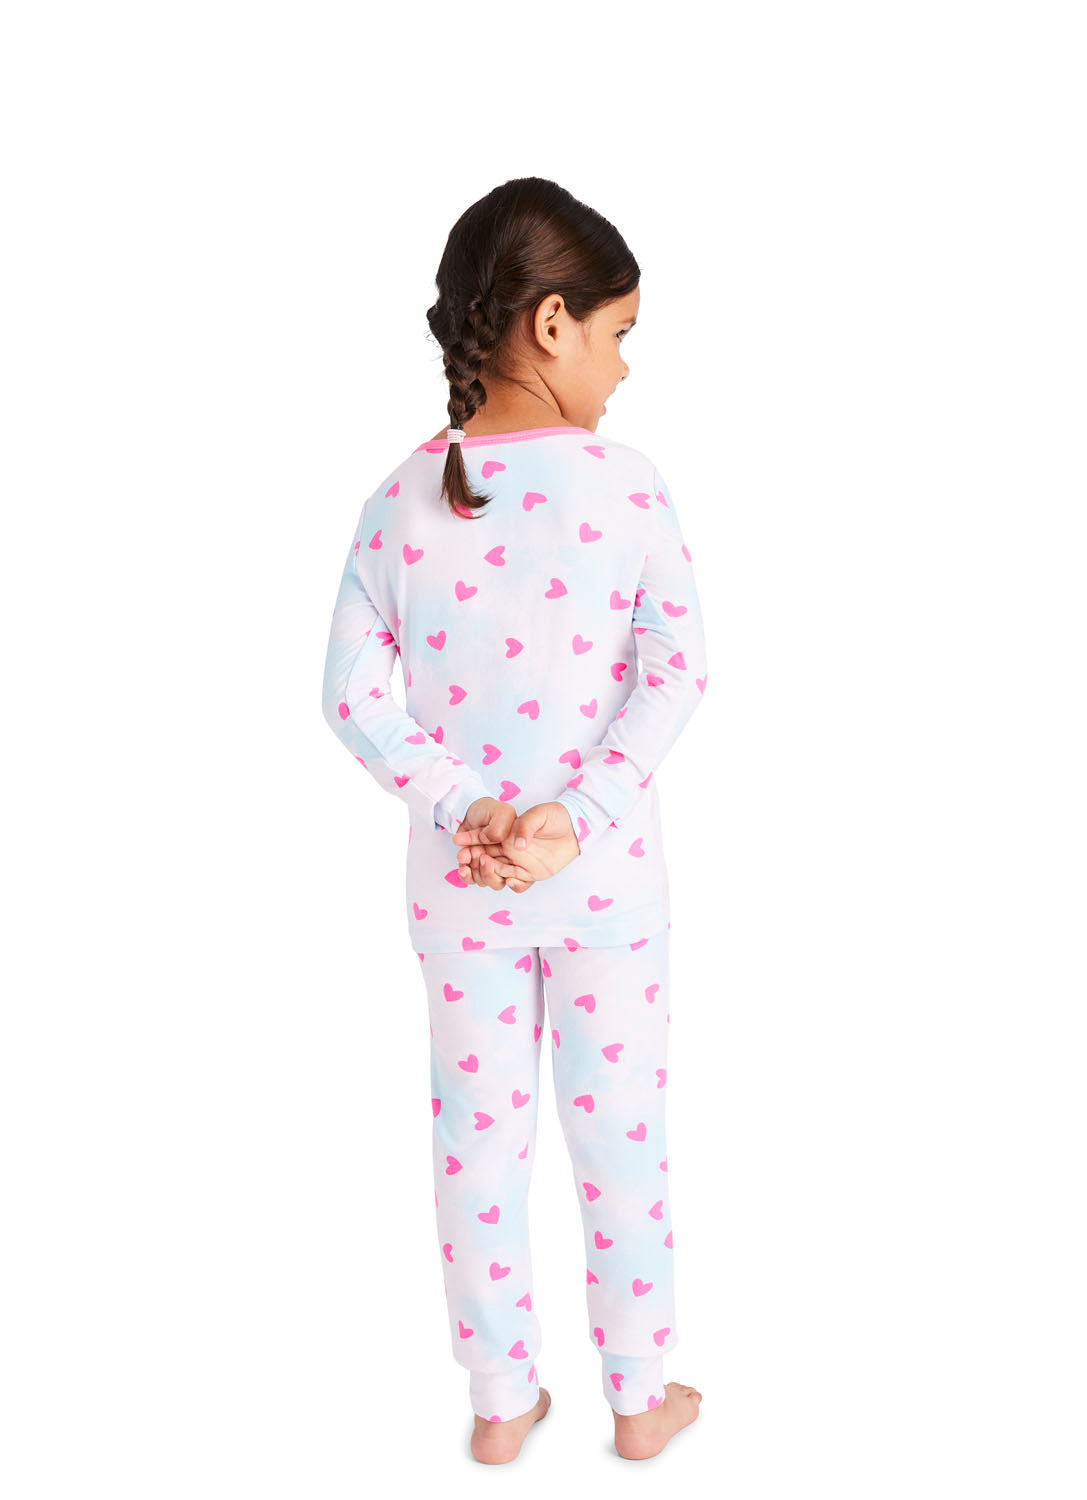 Back view Little Girl wearing Pink Dog Pajama Set